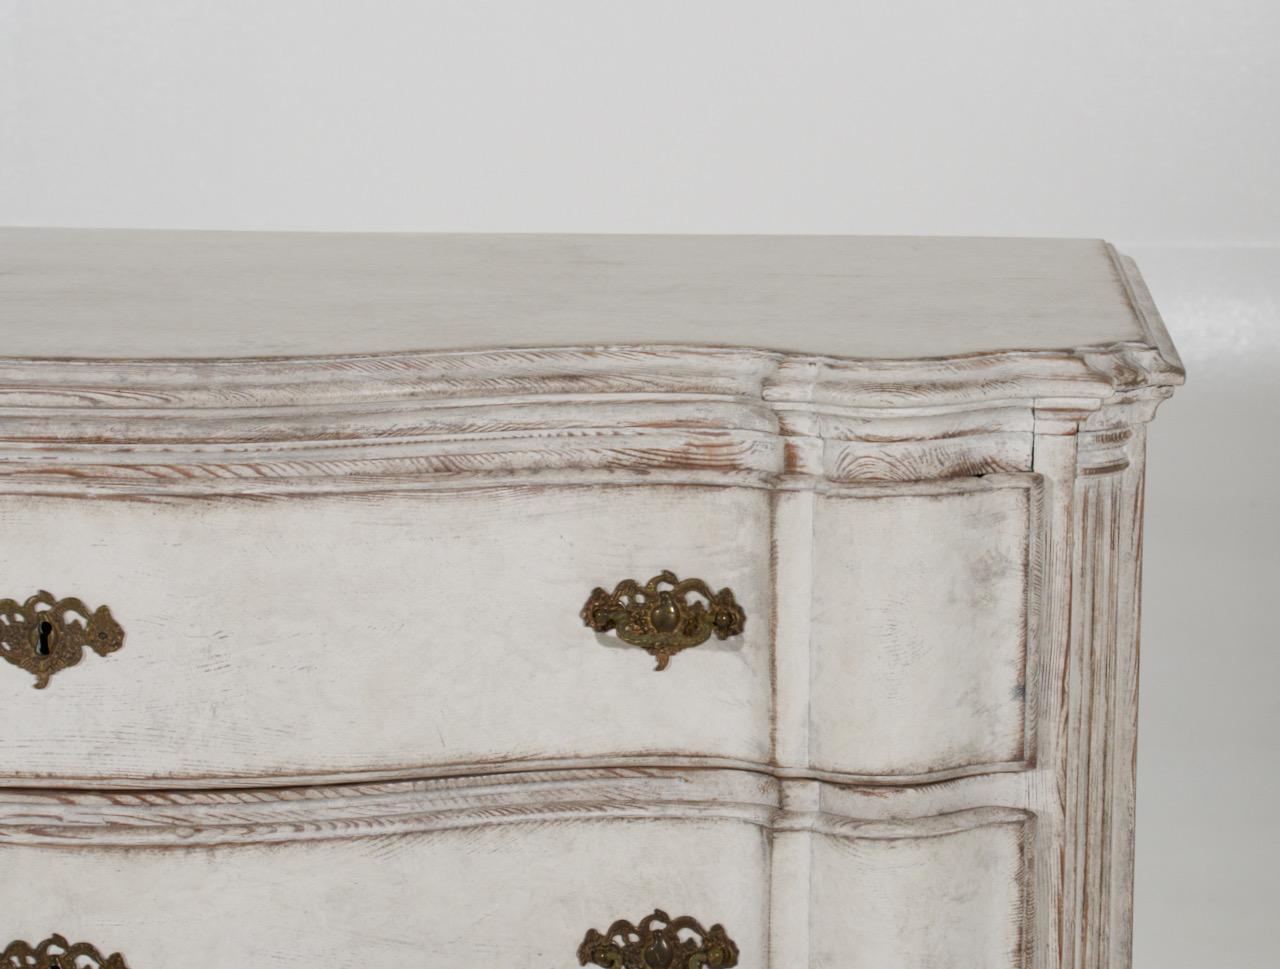 Rare chest of drawers, probably Danish around 1750.